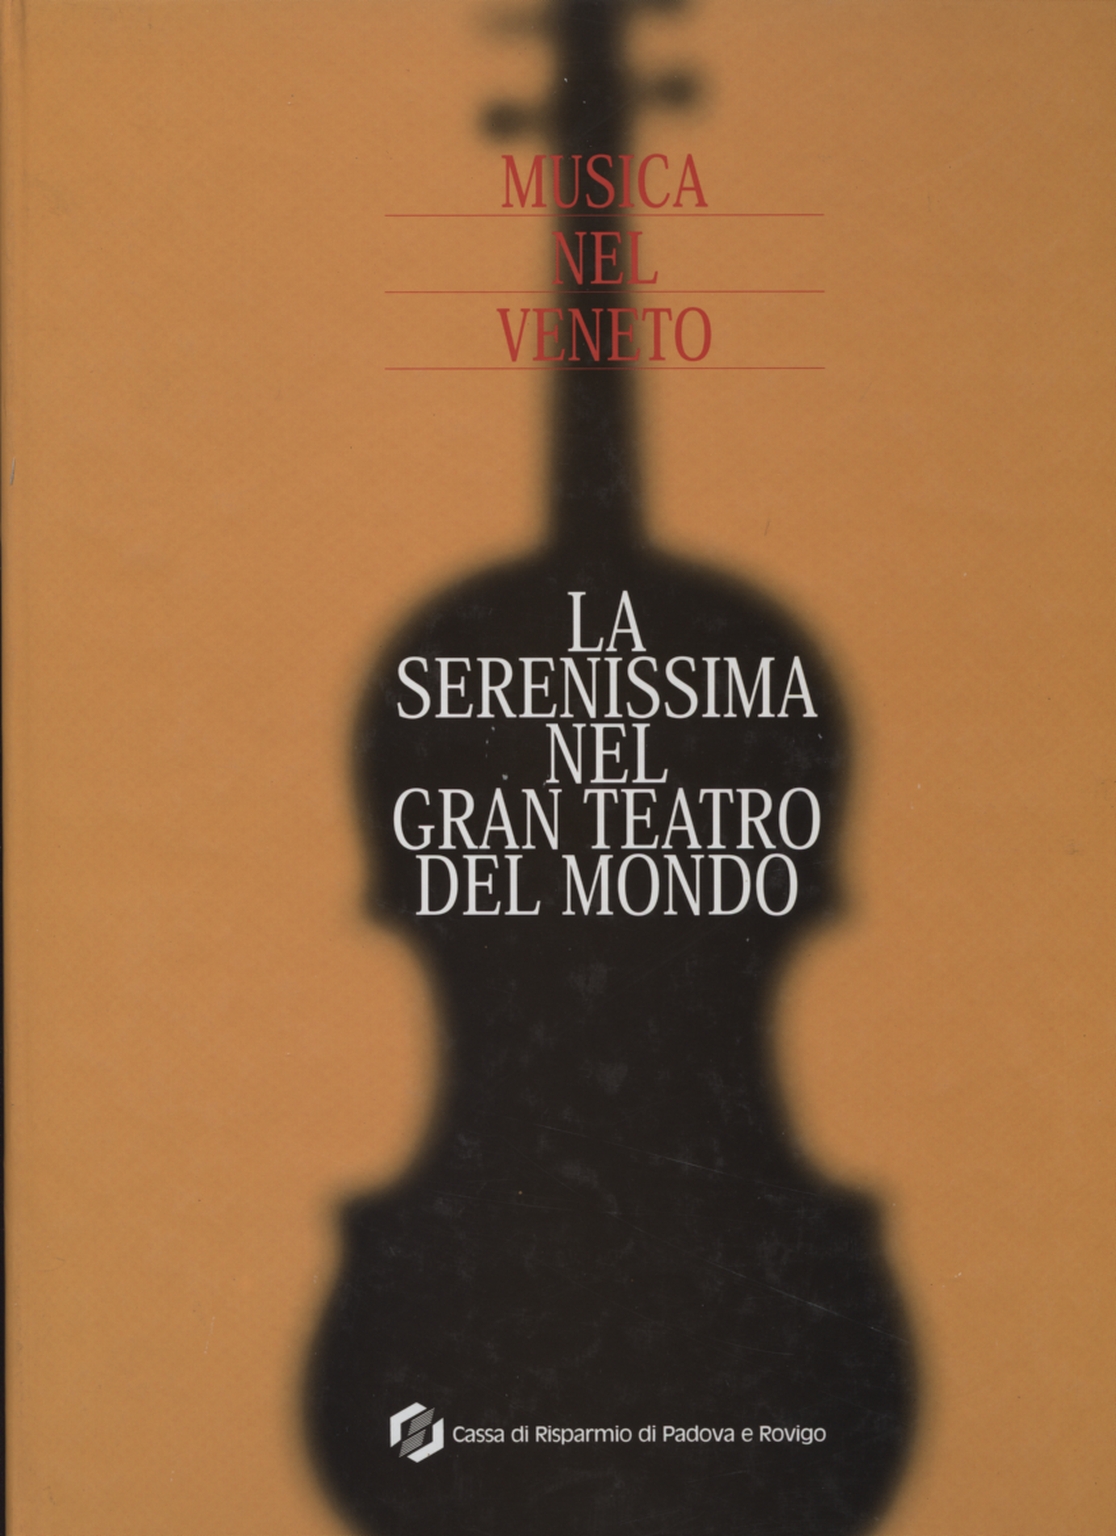 La serenissima nel gran teatro del mondo (Con CD), Massimo Rolando Zegna